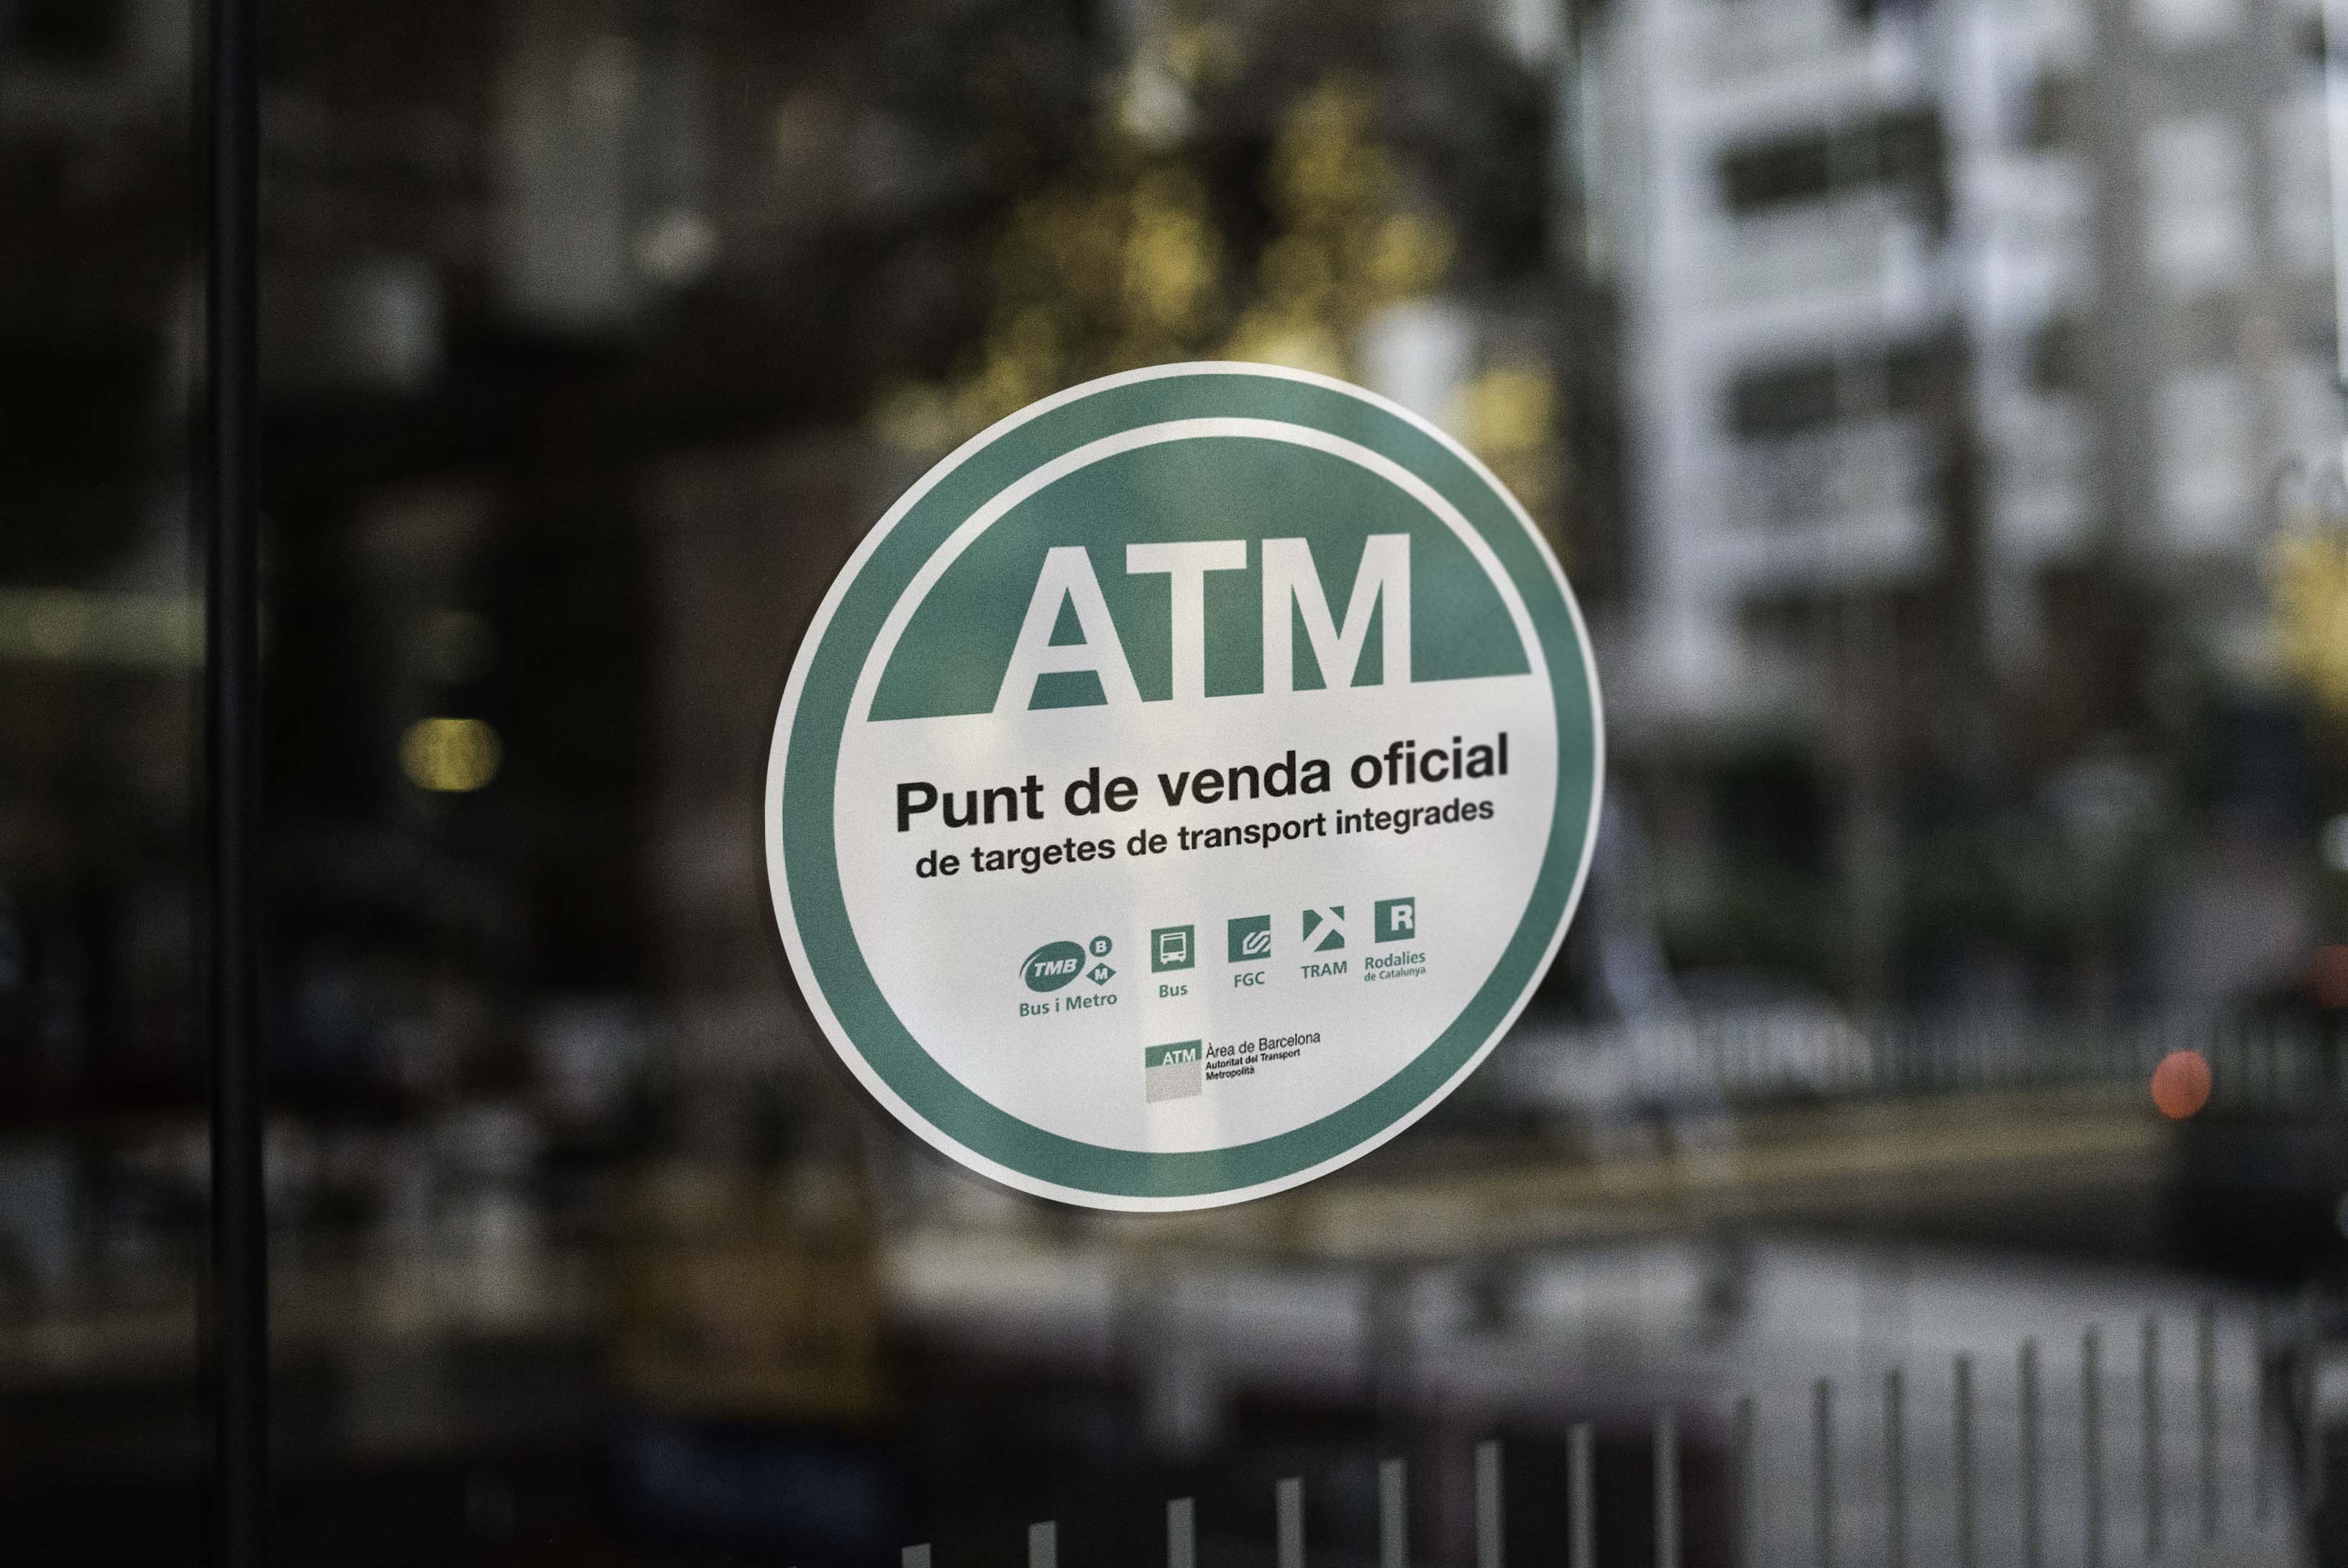 Click-IT s’adjudica el nou contracte d’ATM, prorrogant així el seu acord de col·laboració fins 2025